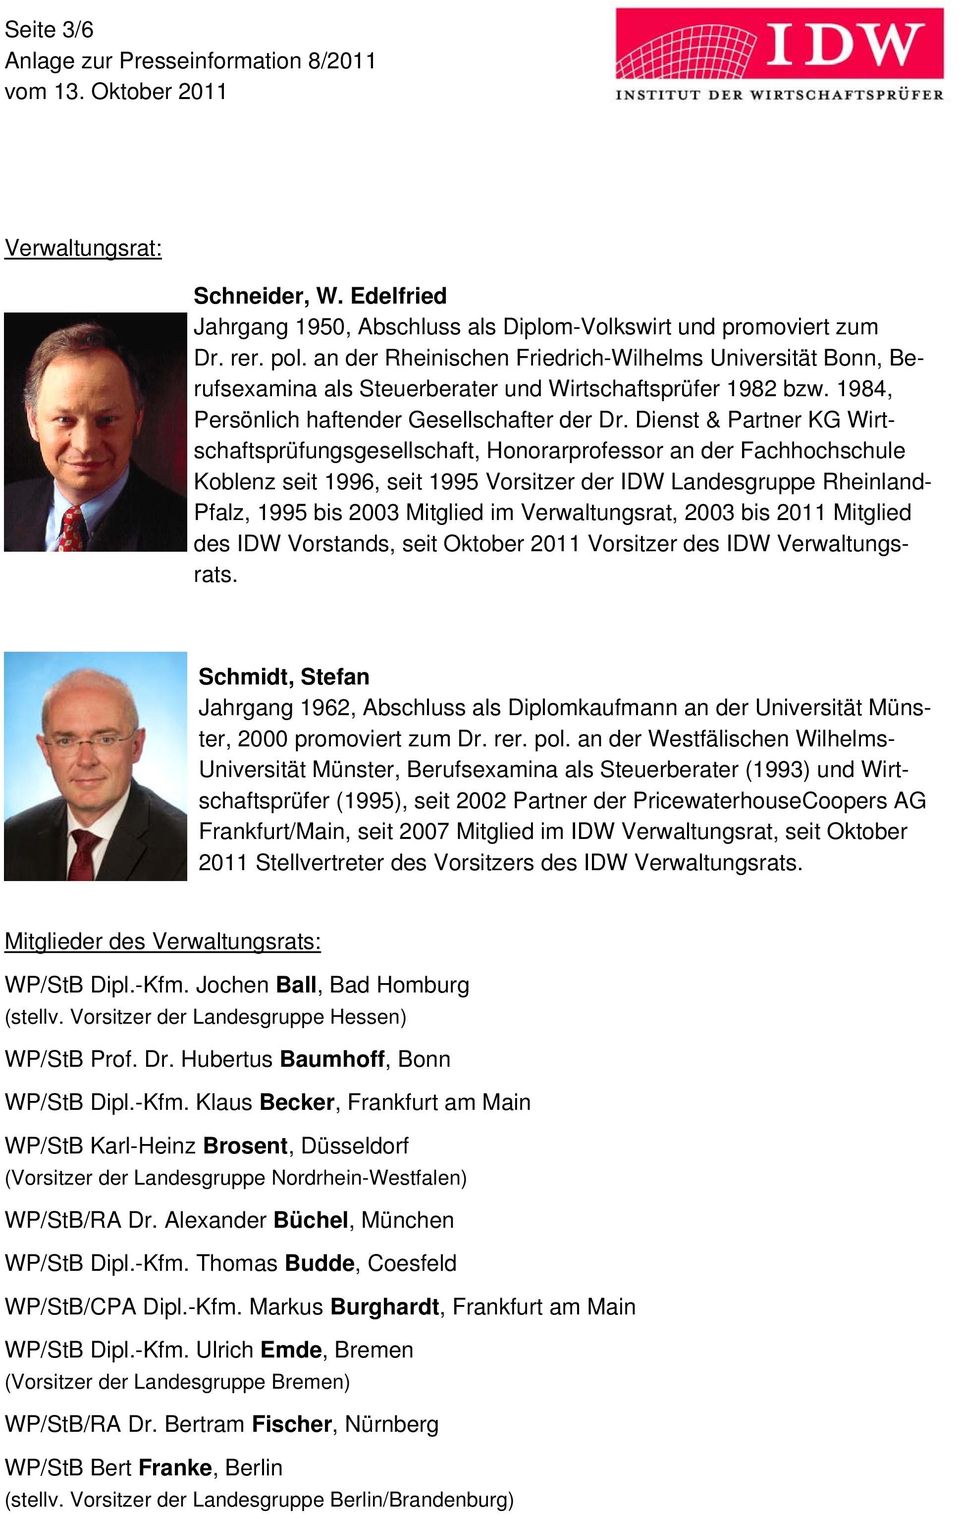 Dienst & Partner KG Wirtschaftsprüfungsgesellschaft, Honorarprofessor an der Fachhochschule Koblenz seit 1996, seit 1995 Vorsitzer der IDW Landesgruppe Rheinland- Pfalz, 1995 bis 2003 Mitglied im